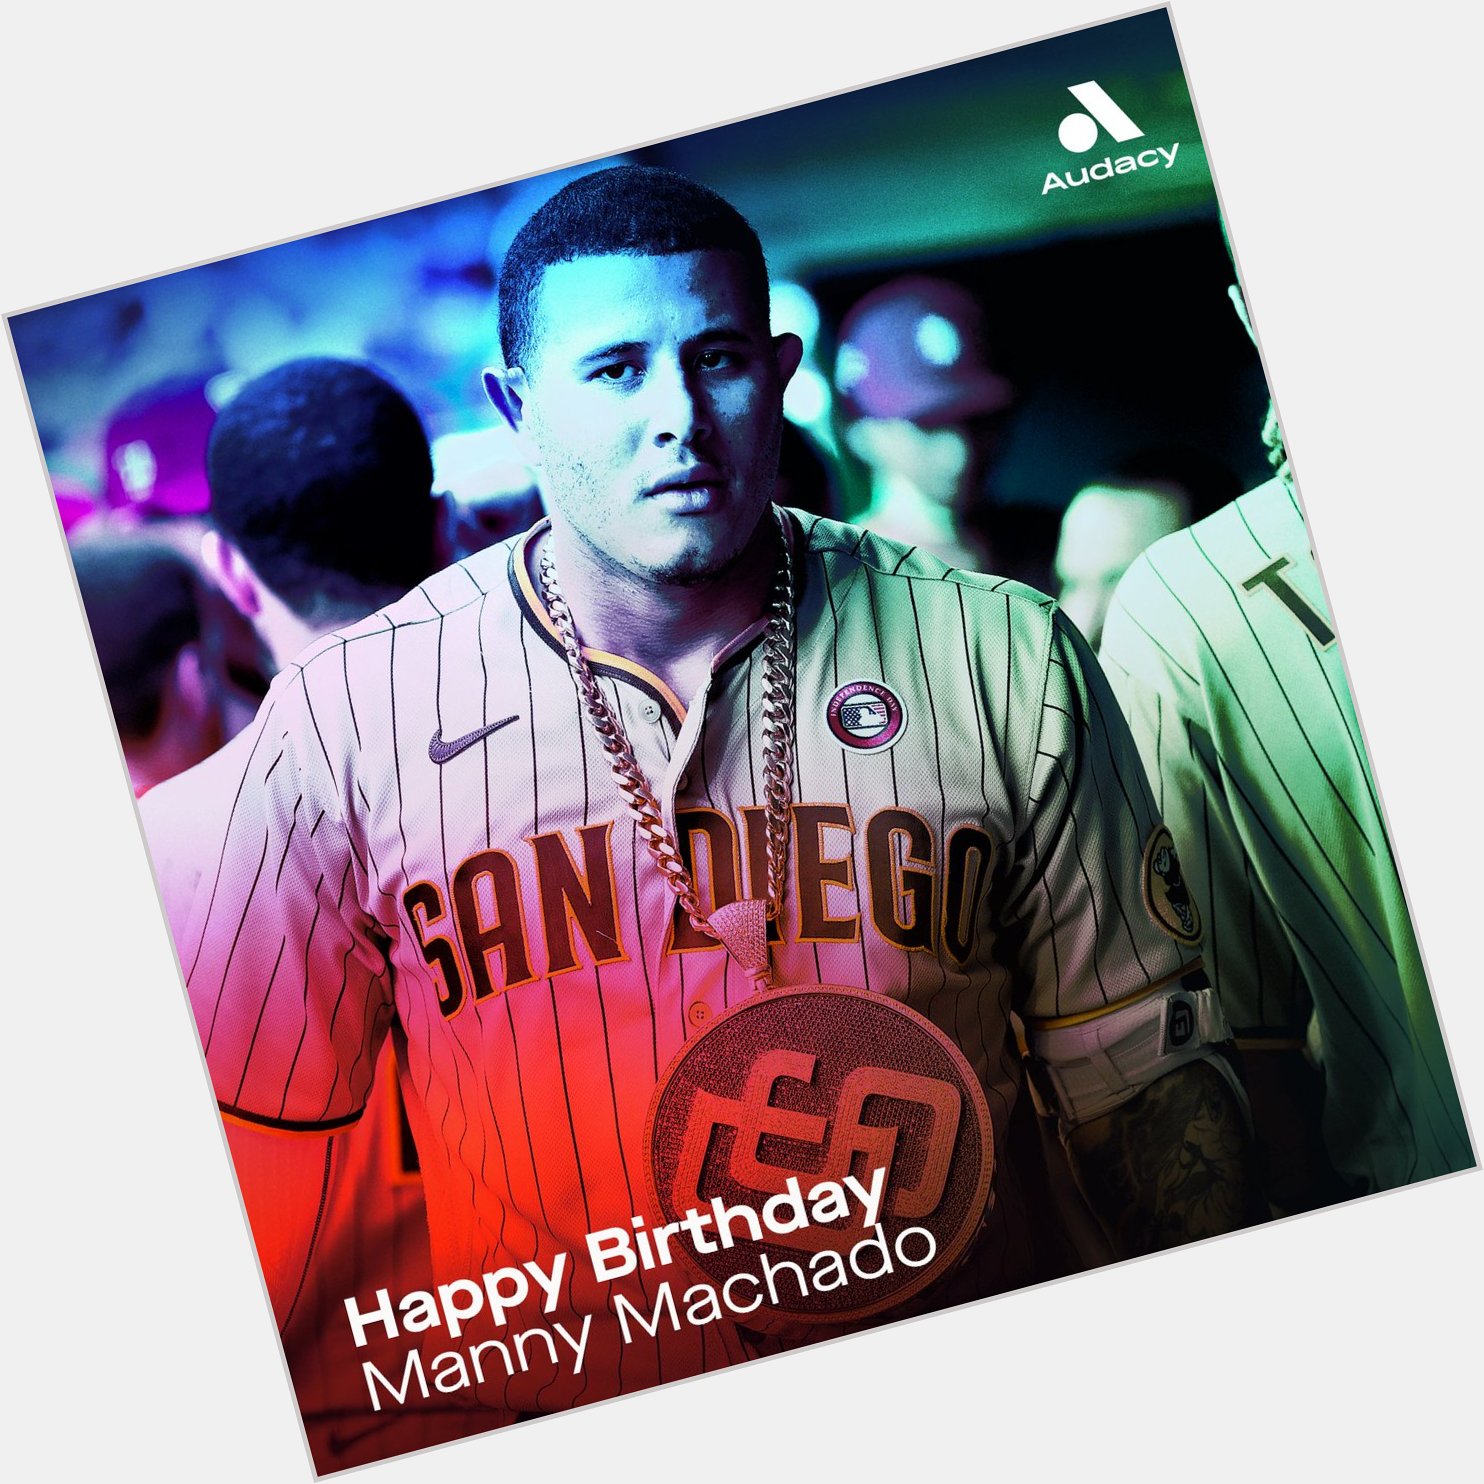 Happy Birthday to Manny Machado!  